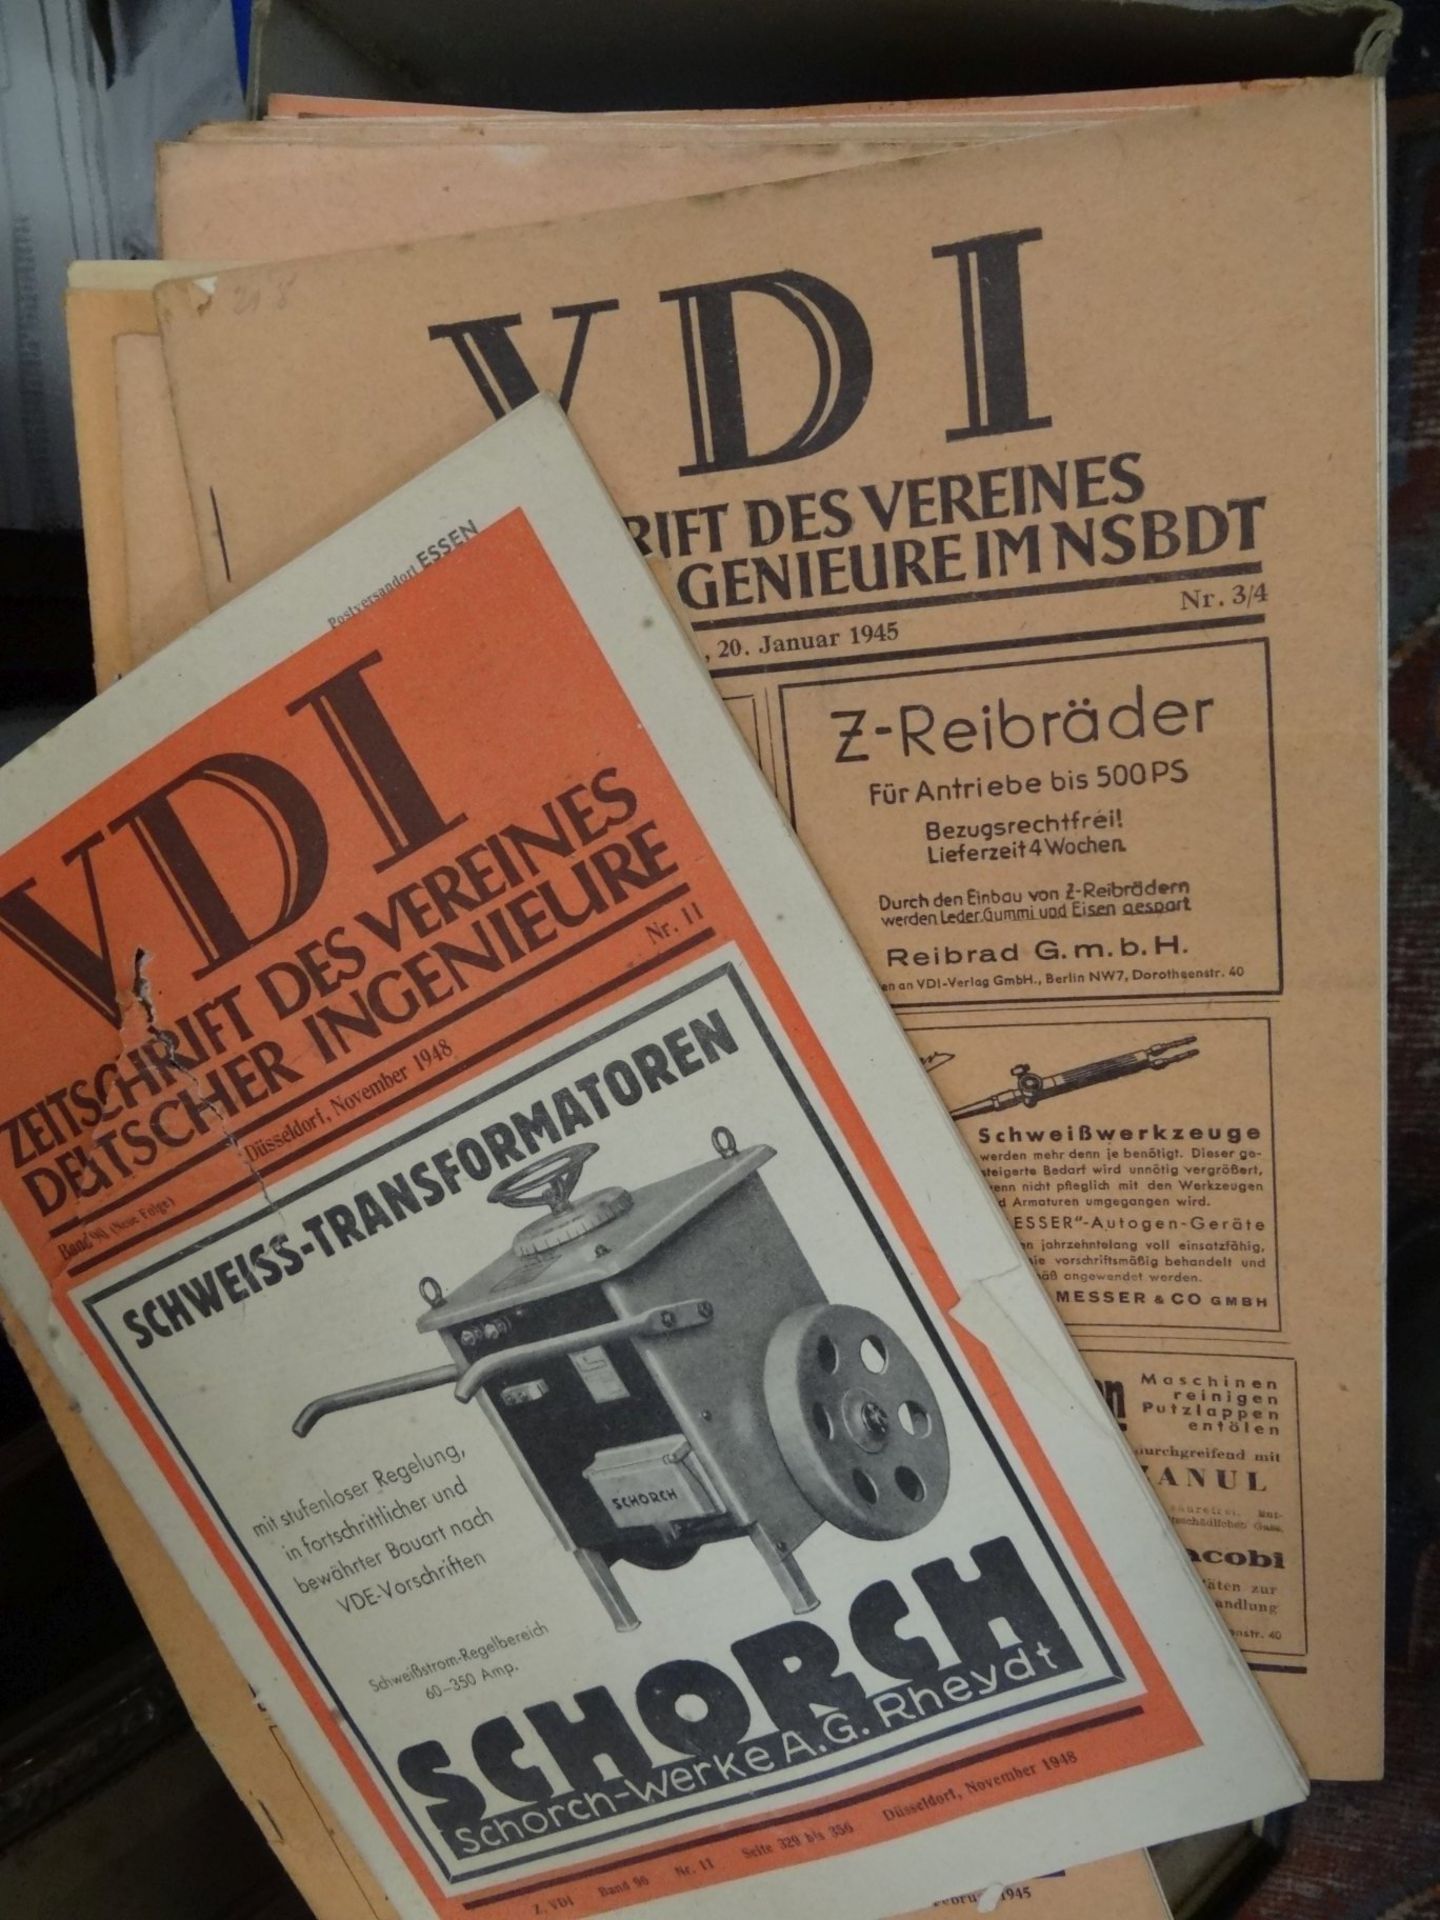 ca. 80 Hefte "VDI" Verein der deutschen Ingenieure im NS BDT, uca. 1940-1944, zeitgemäss viel